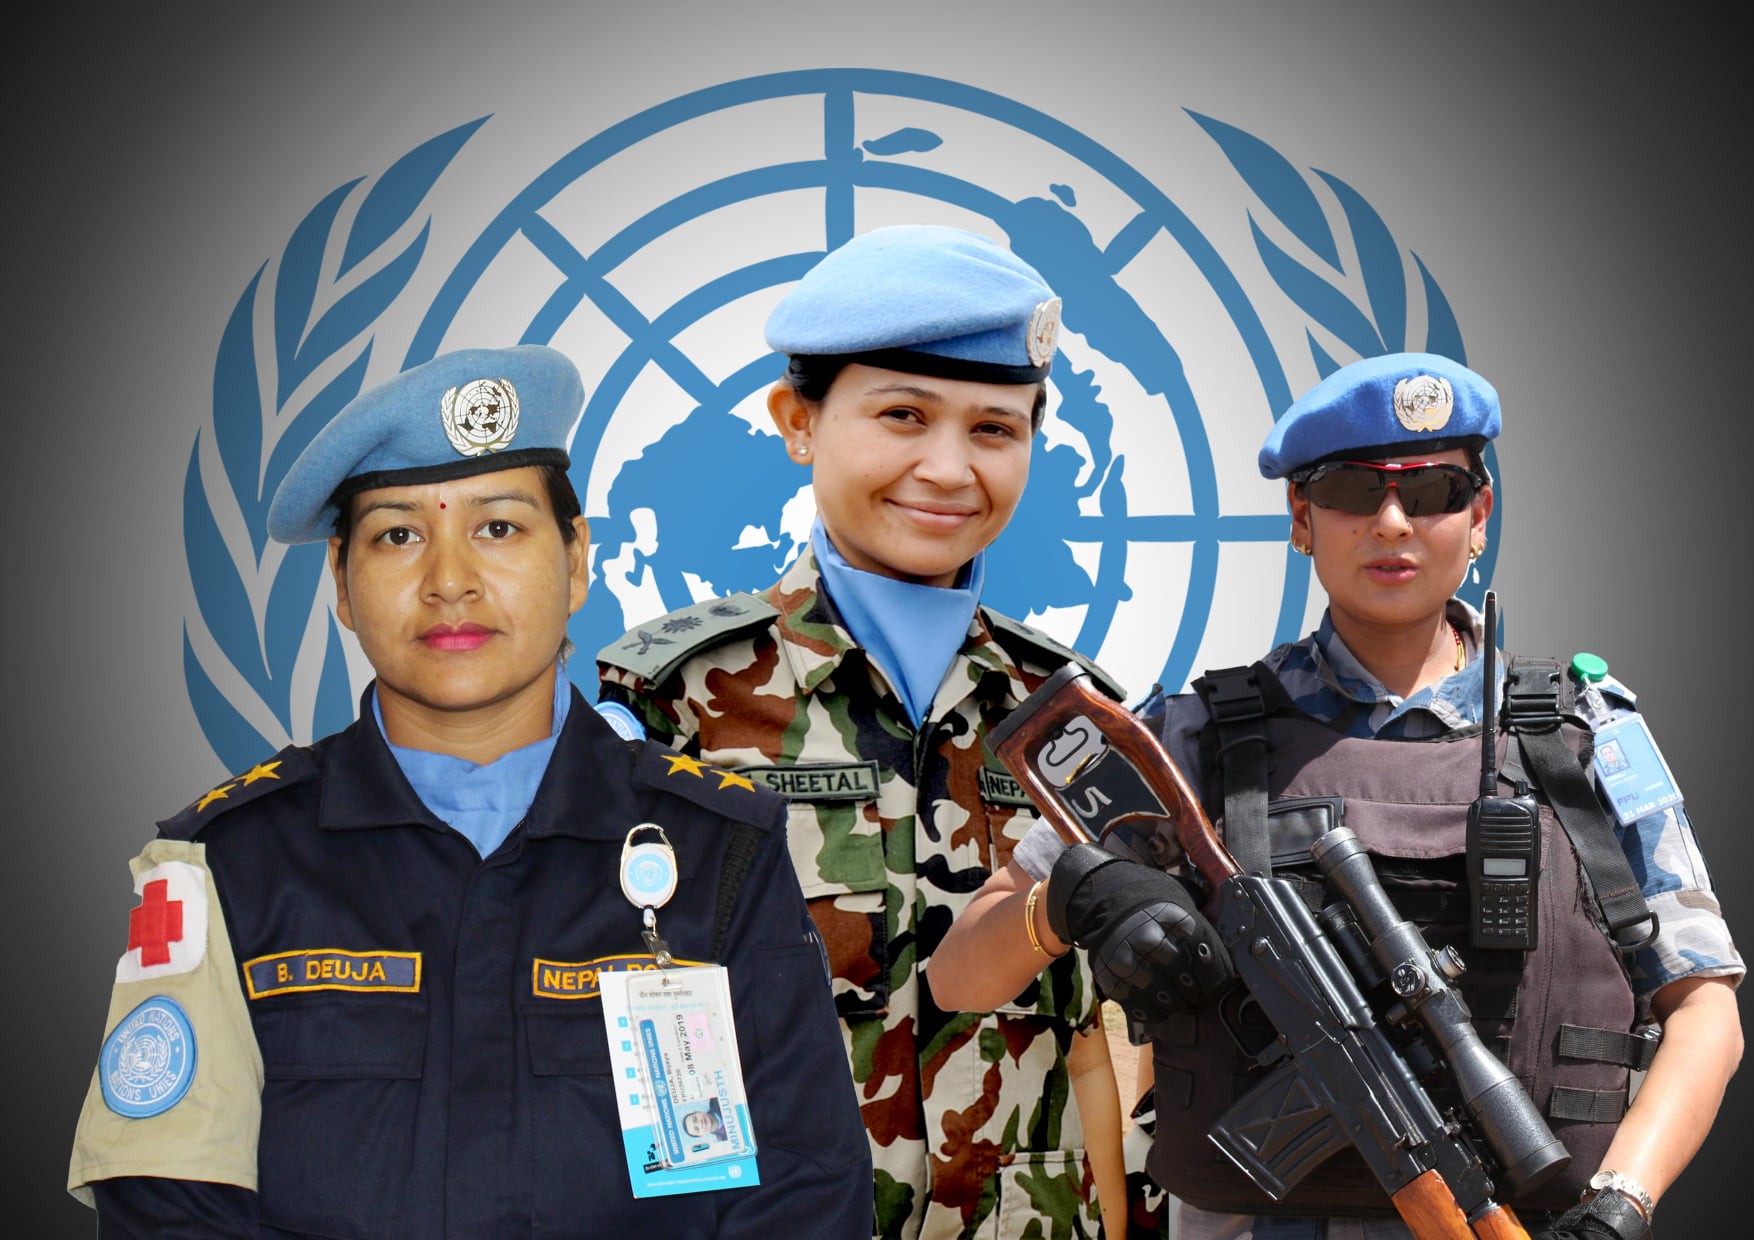 शान्ति सेनामा योगदान गर्ने मुलुकको सूचीमा नेपाल विश्वकै तेस्रो स्थानमा पर्न सफल